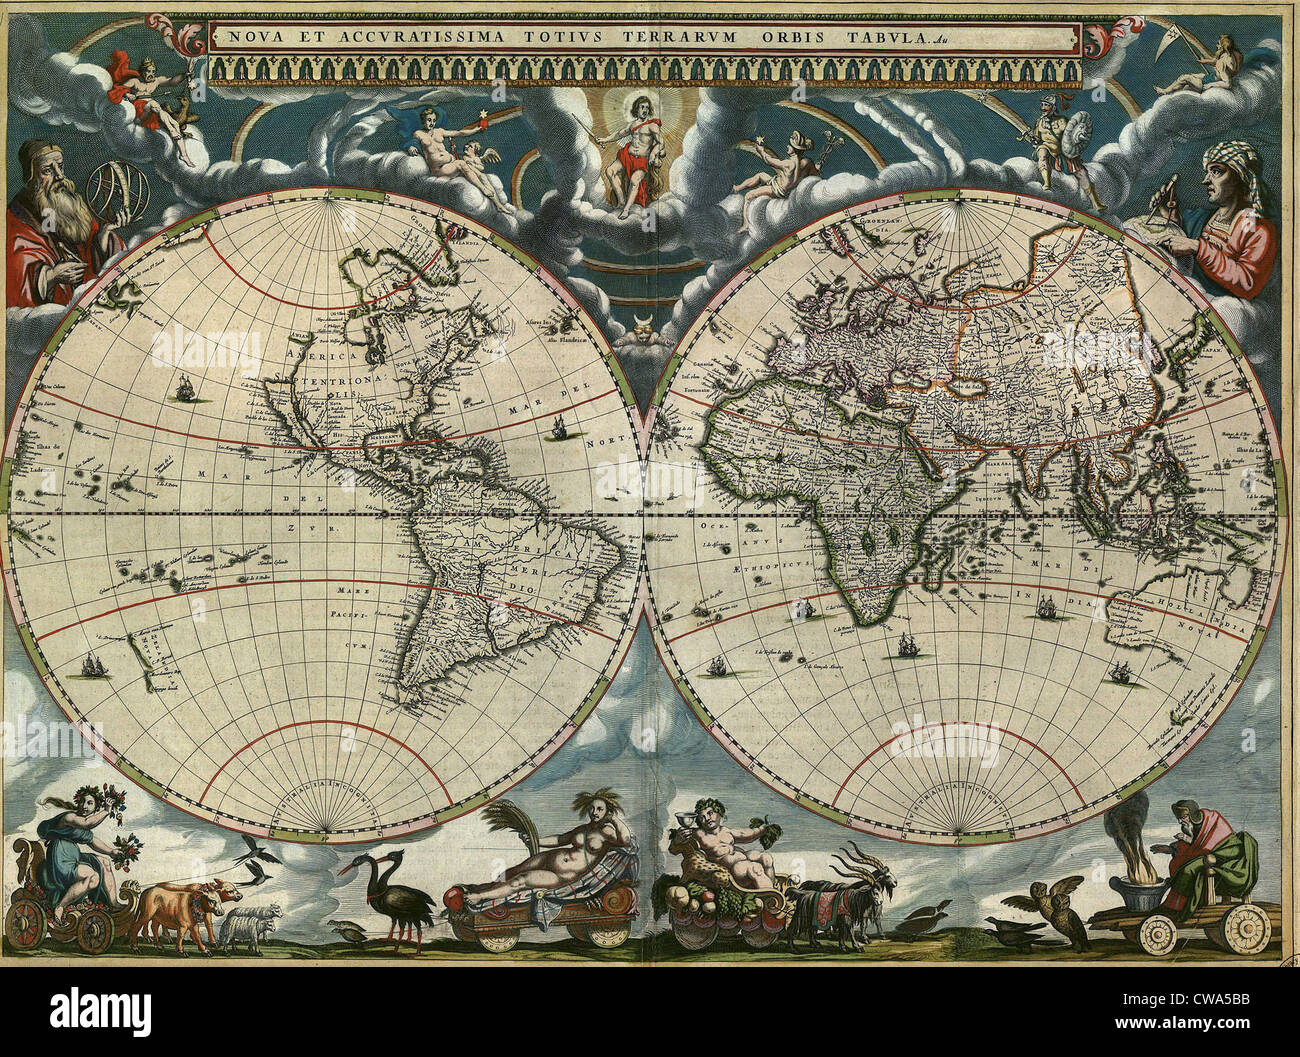 1664 niederländischen Weltkarte ist reich verziert und zeigt deutlich die östlichen und westlichen Hemisphären. Polarregionen sind nicht definiert, Stockfoto